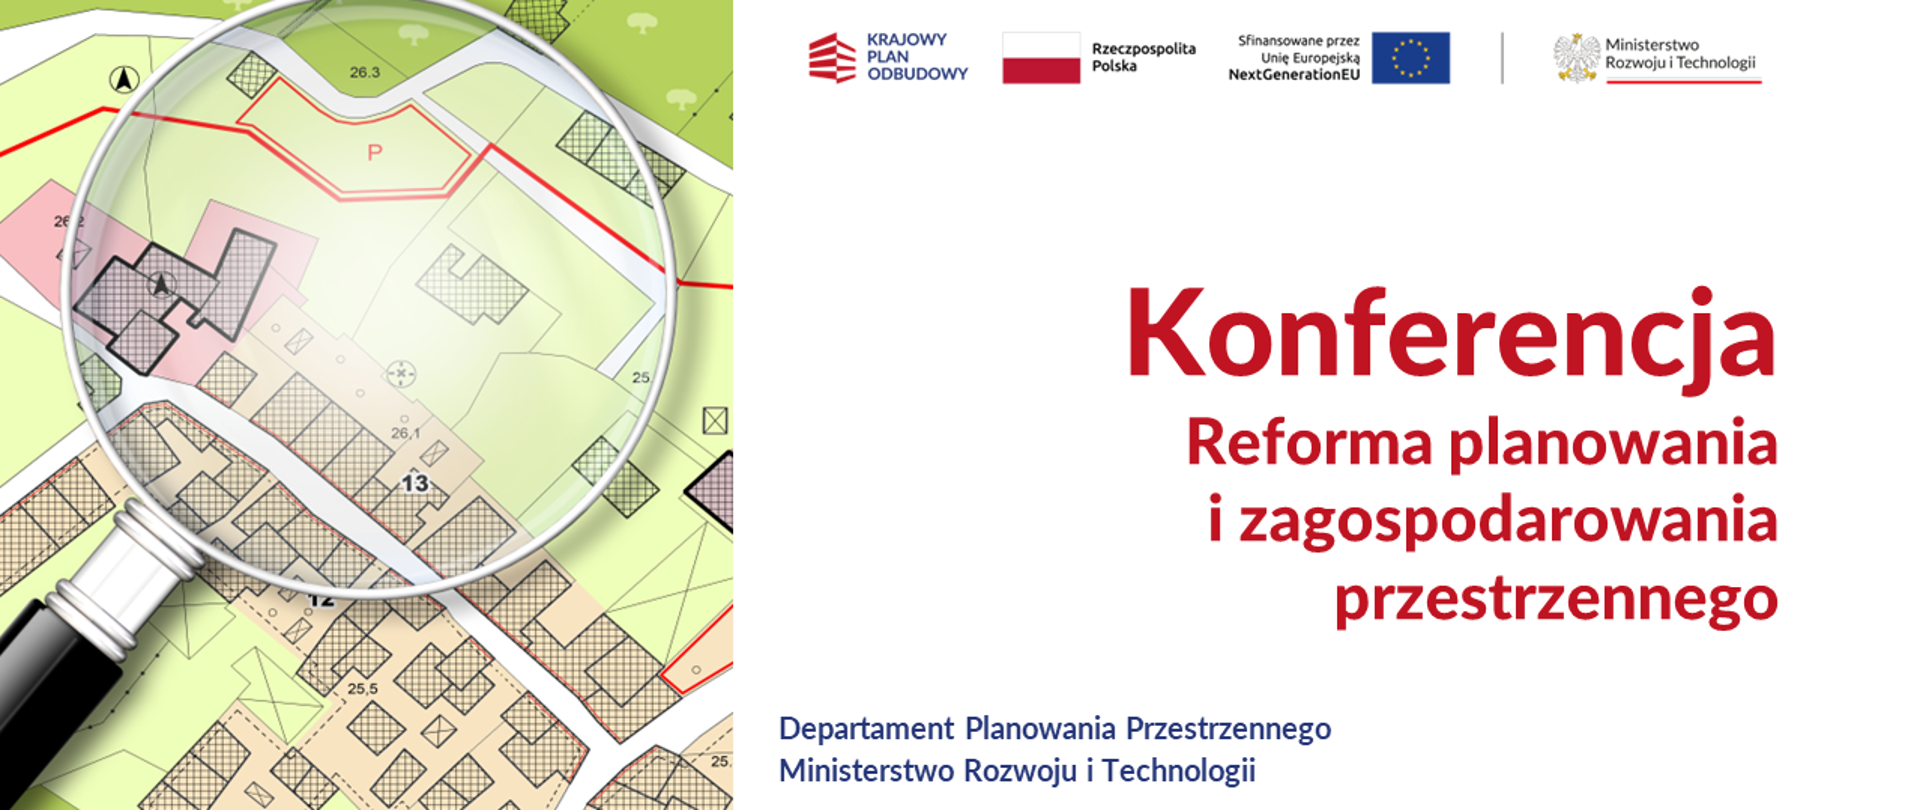 Białe tło. Po lewej stronie grafika z podkładem mapowym i lupą. Po prawej stronie czerwony napis "Konferencja reforma planowania i zagospodarowania przestrzennego". 